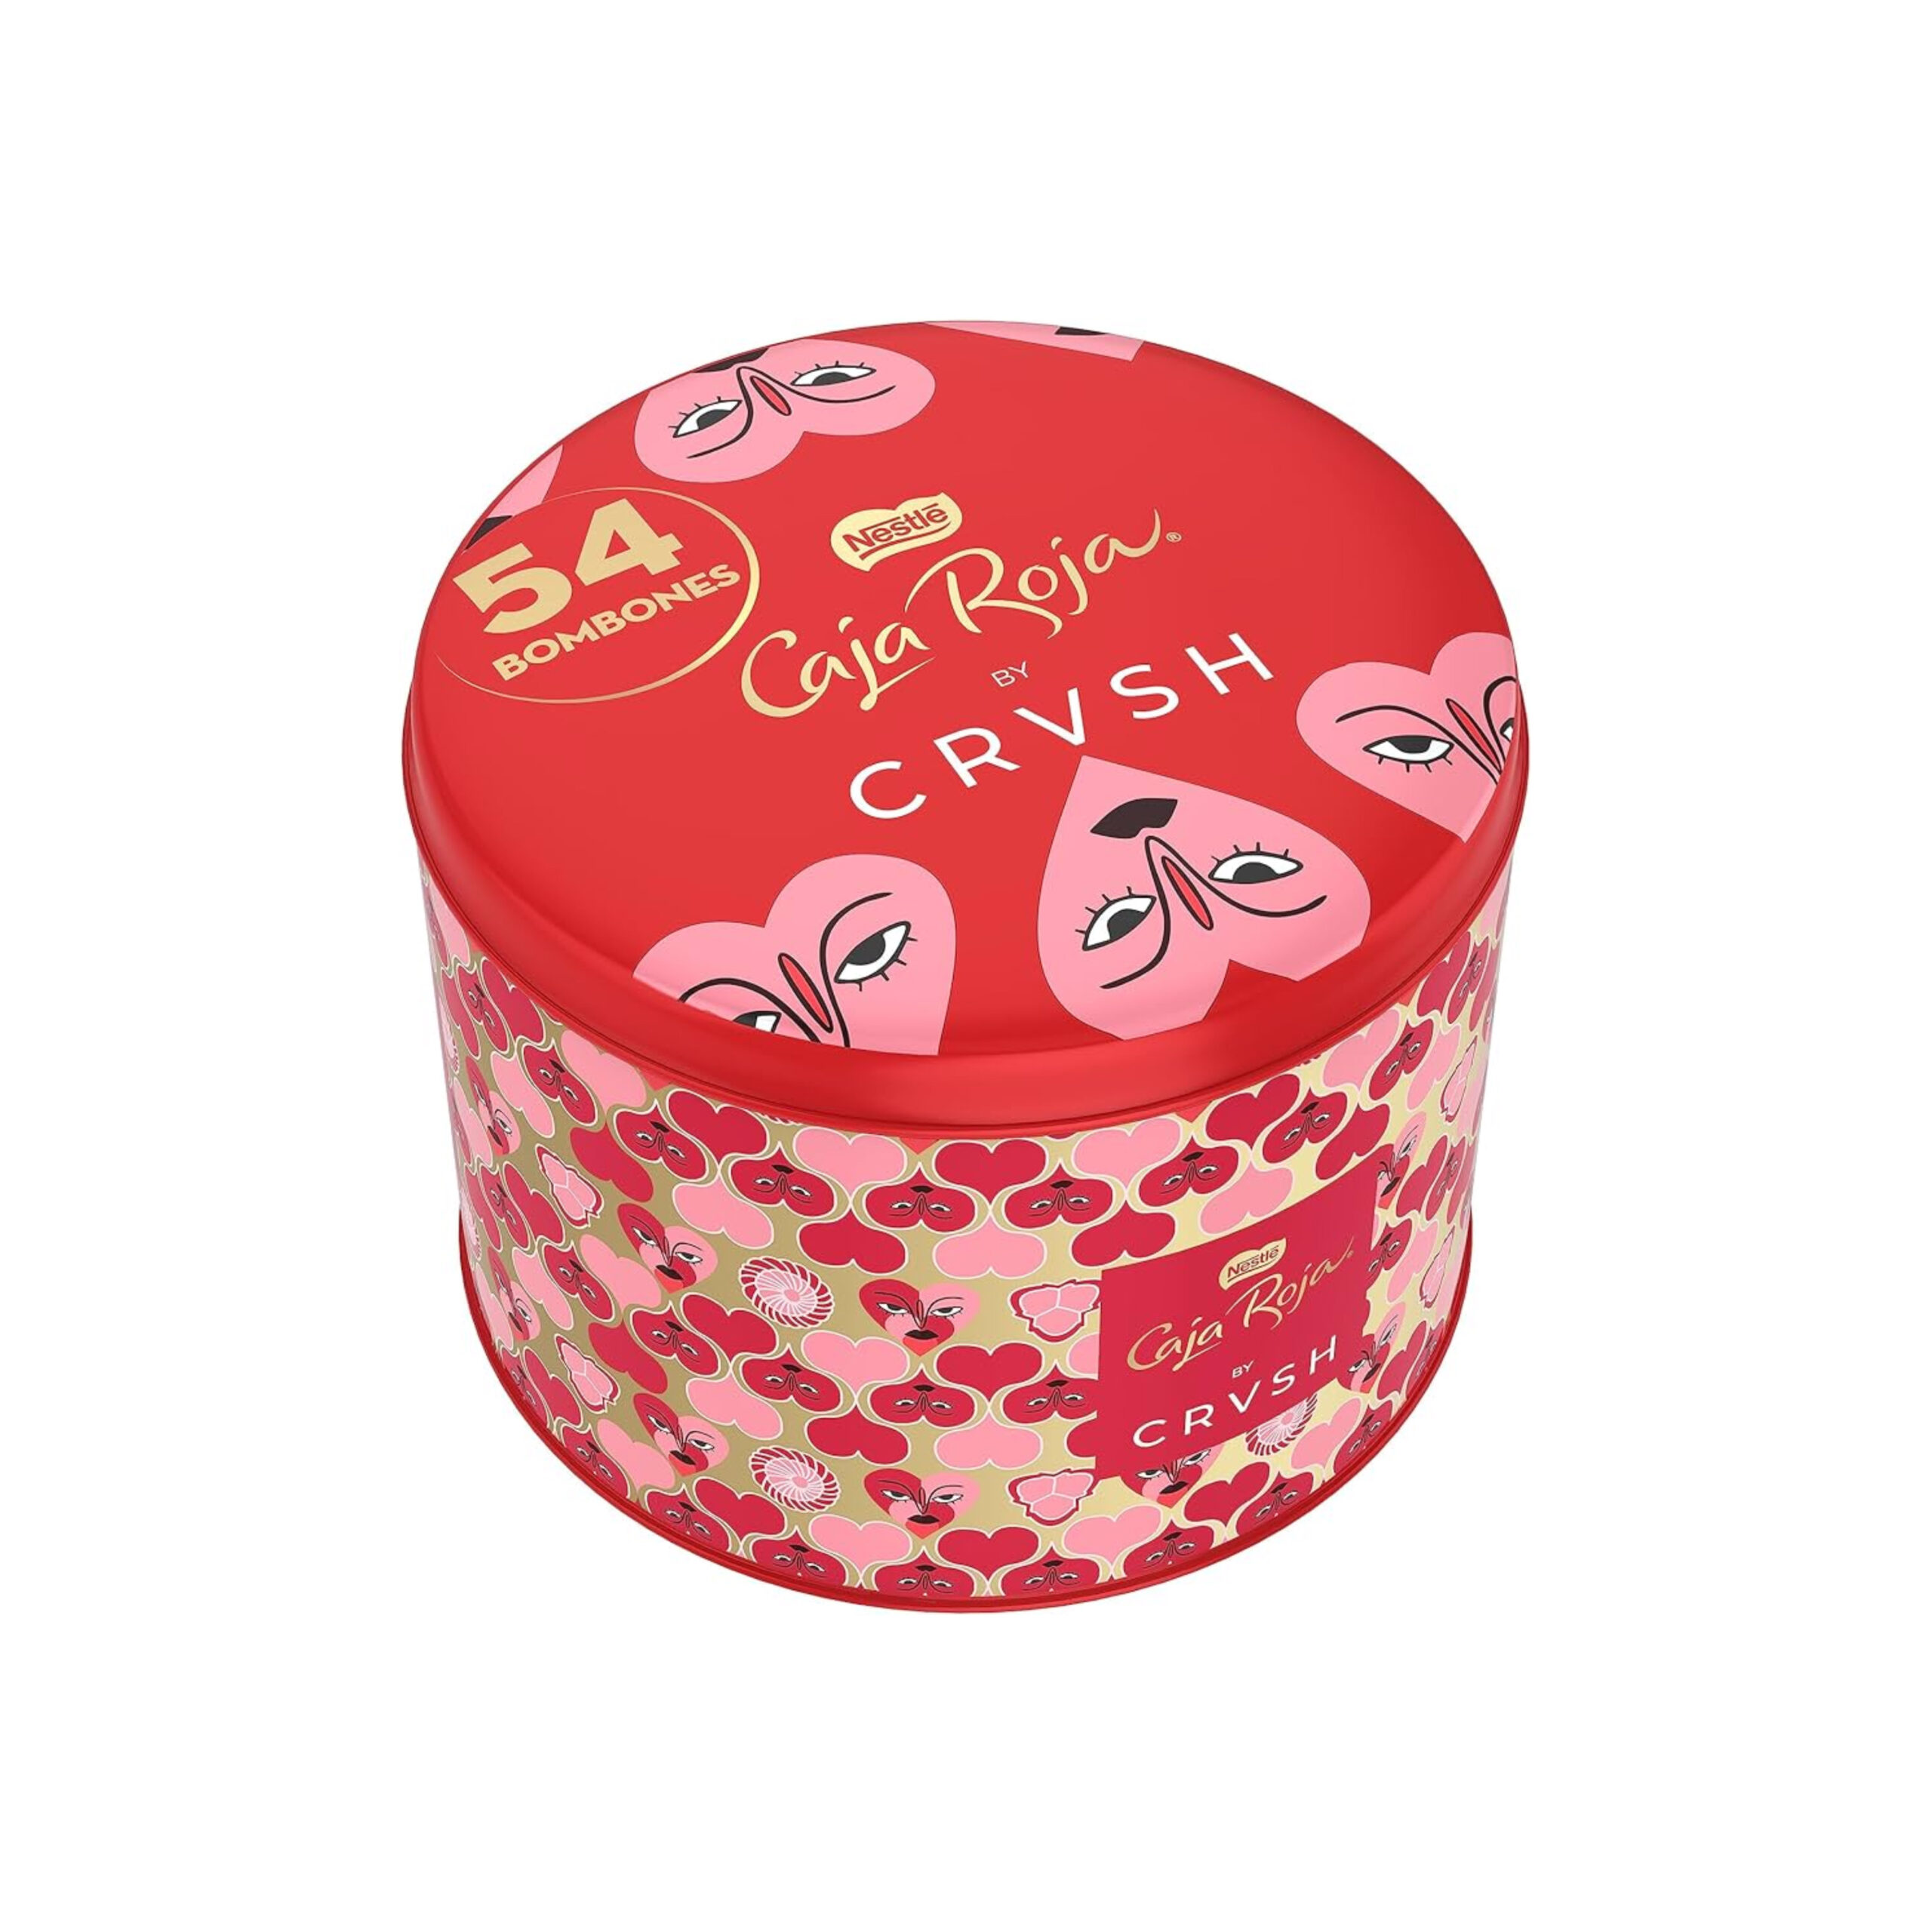 Caja roja bombones Nestlé - ejemplo promoción envase-regalo